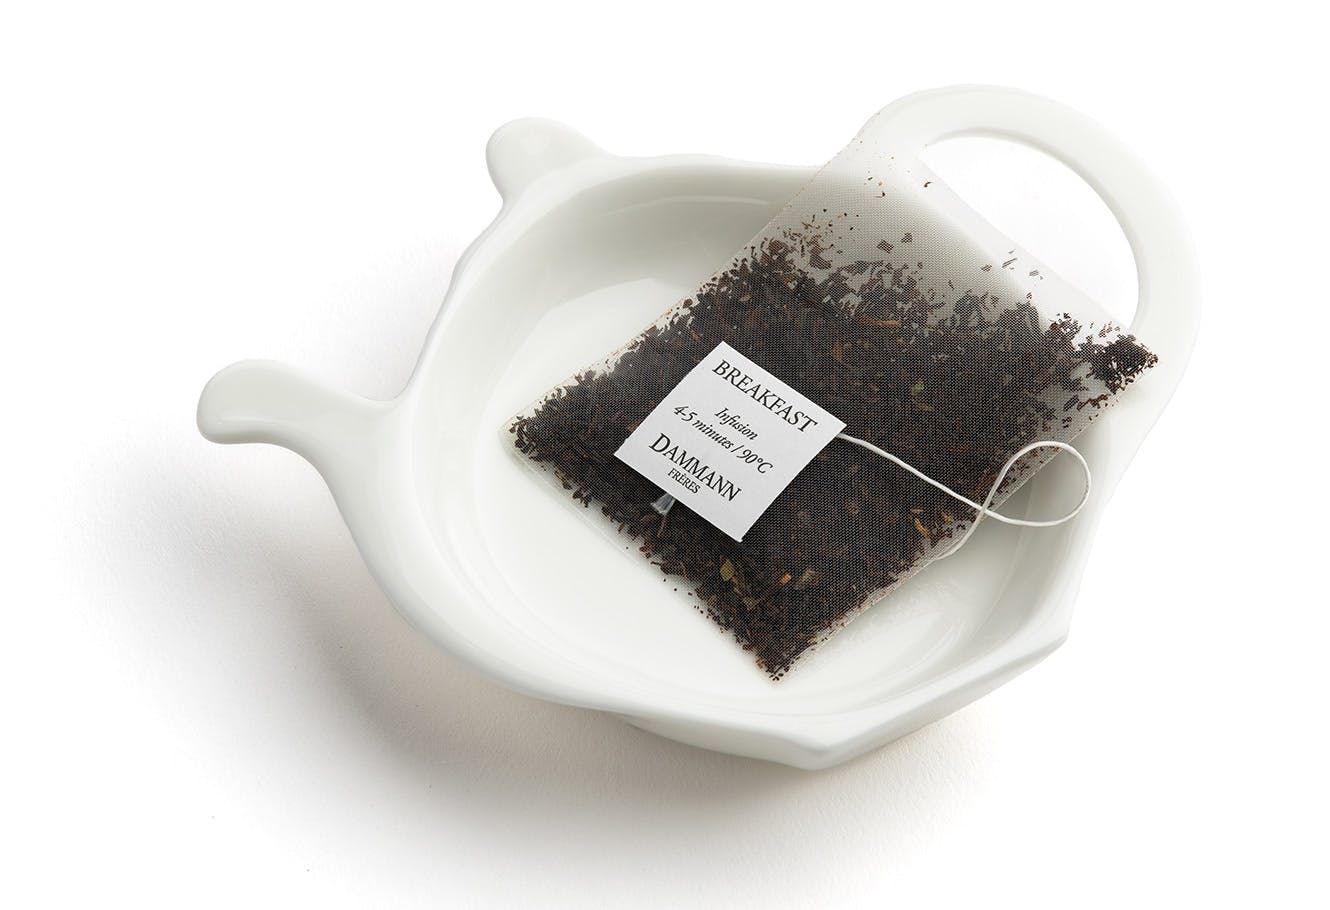 7 exemples de repose sachet de thé originaux - Au Paradis du Thé